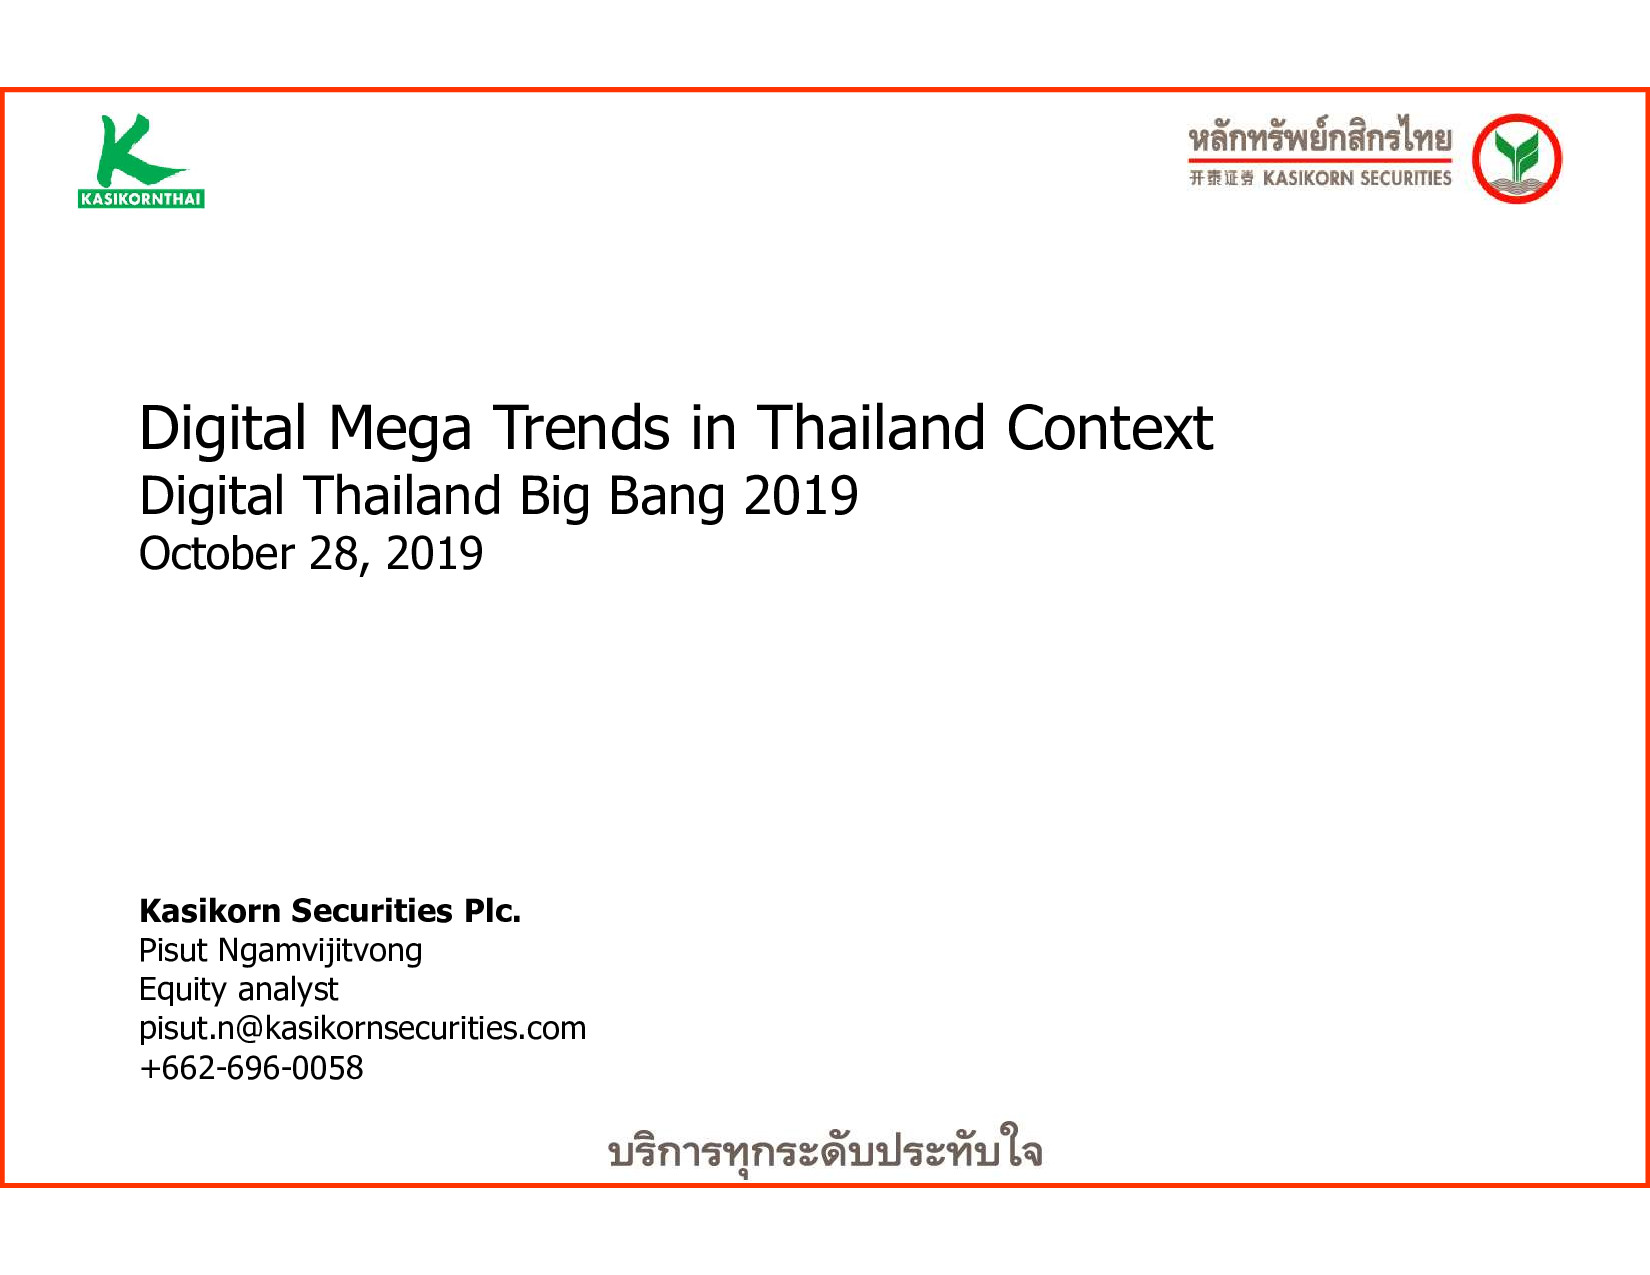 191027 Digital Mega Trends in Thailand Context KSEC p001